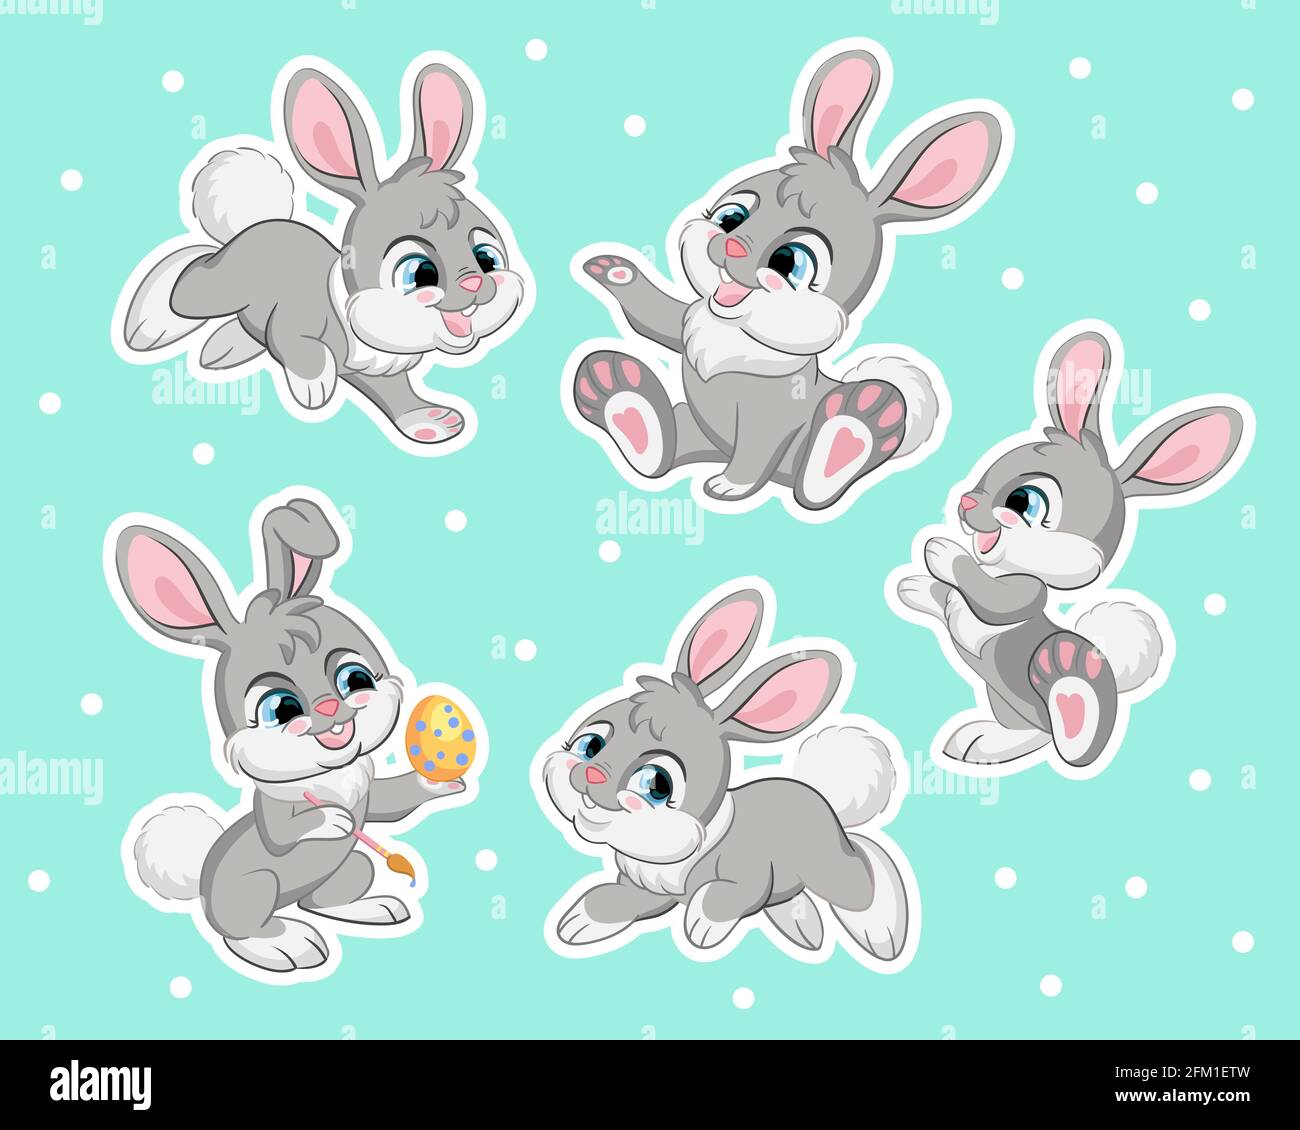 Set von niedlichen Cartoon grauen Kaninchen. Vektor-isolierte Illustration. Für Postkarte, Poster, Kindergartengestaltung, Grußkarte, Aufkleber, Zimmereinrichtung, Party, nur Stock Vektor